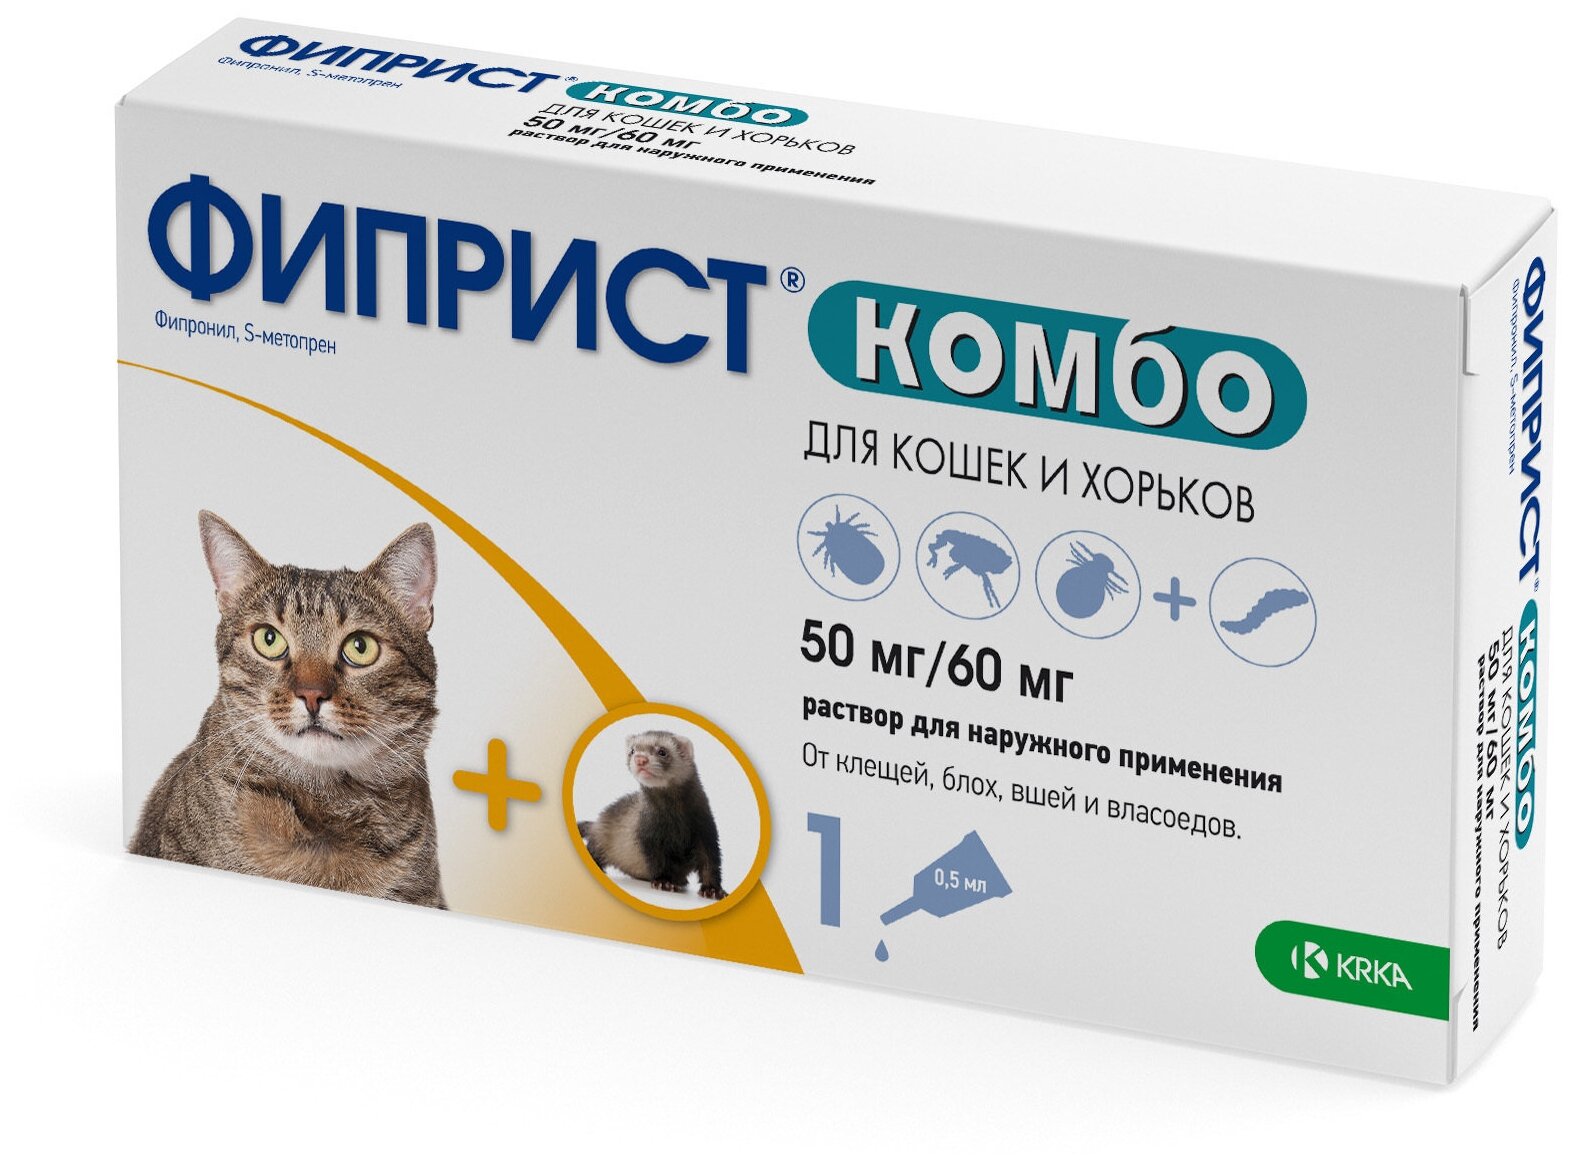 Препарат для кошек и хорьков KRKA - фото №1